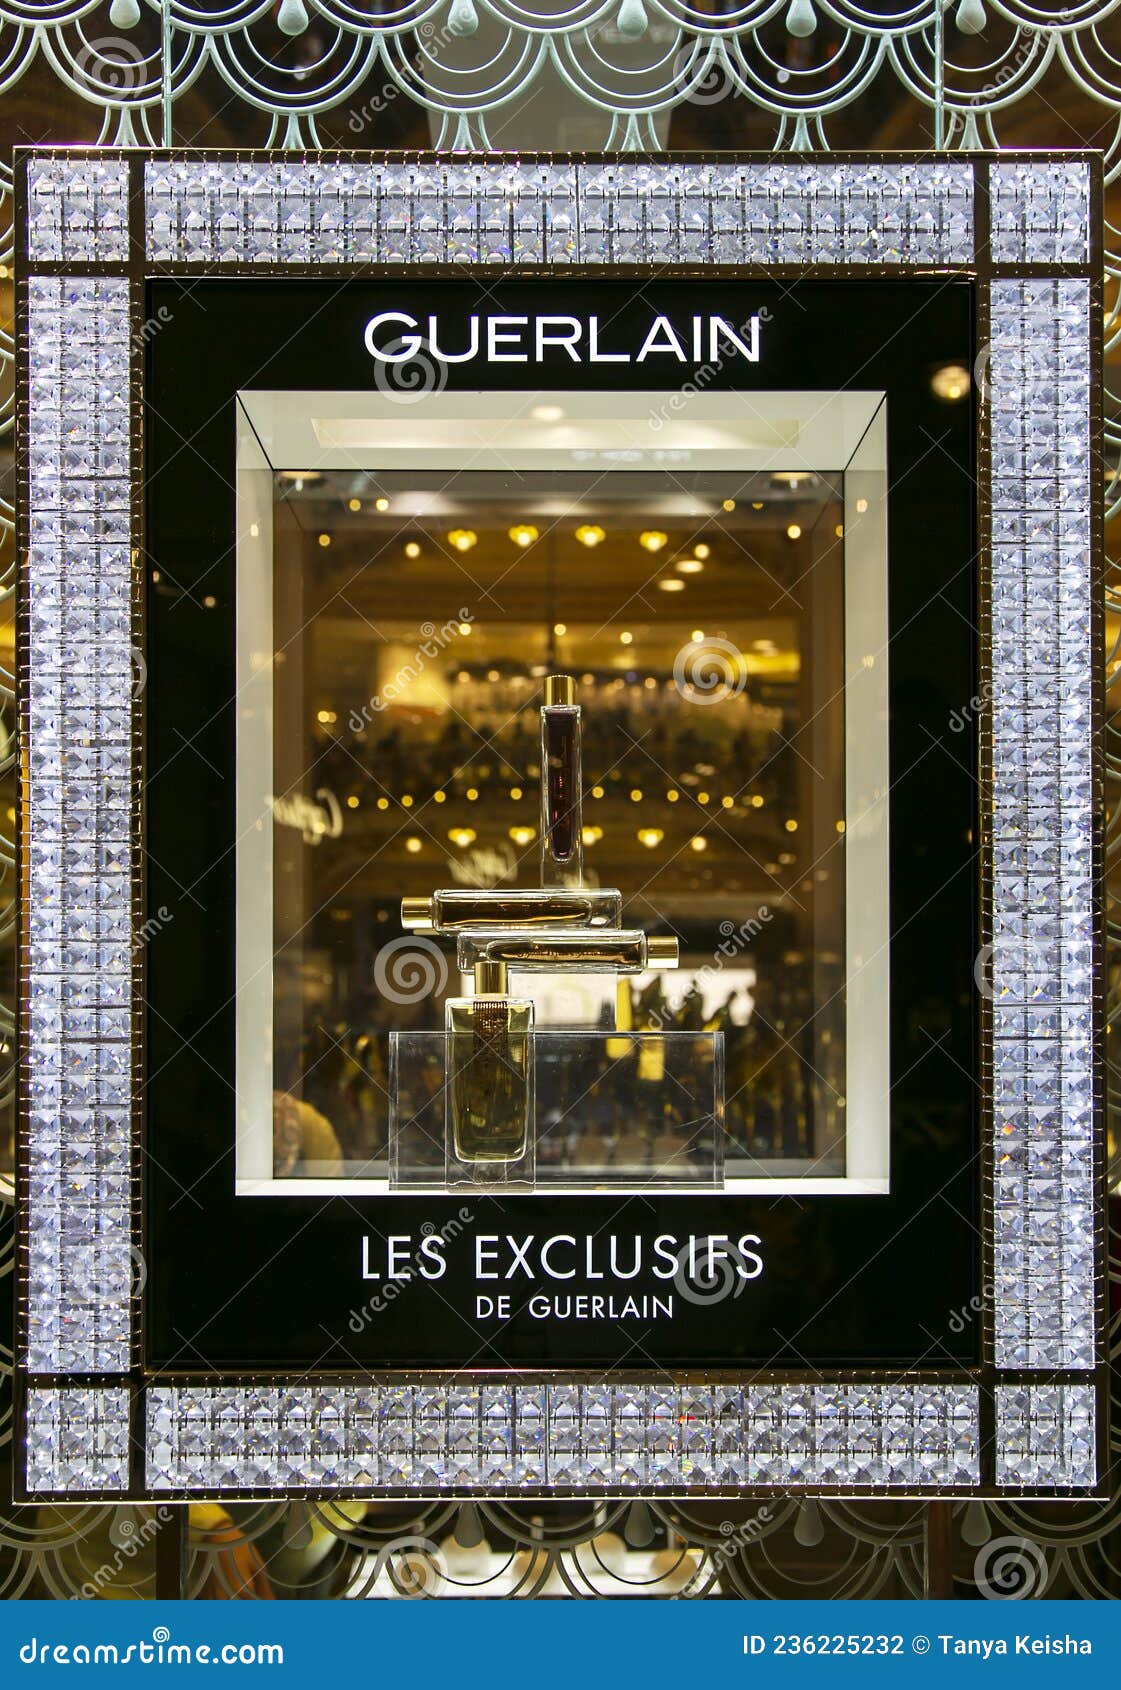 Galeries Lafayette Champs-Élysées Paris, France, Europe Stock Photo - Alamy